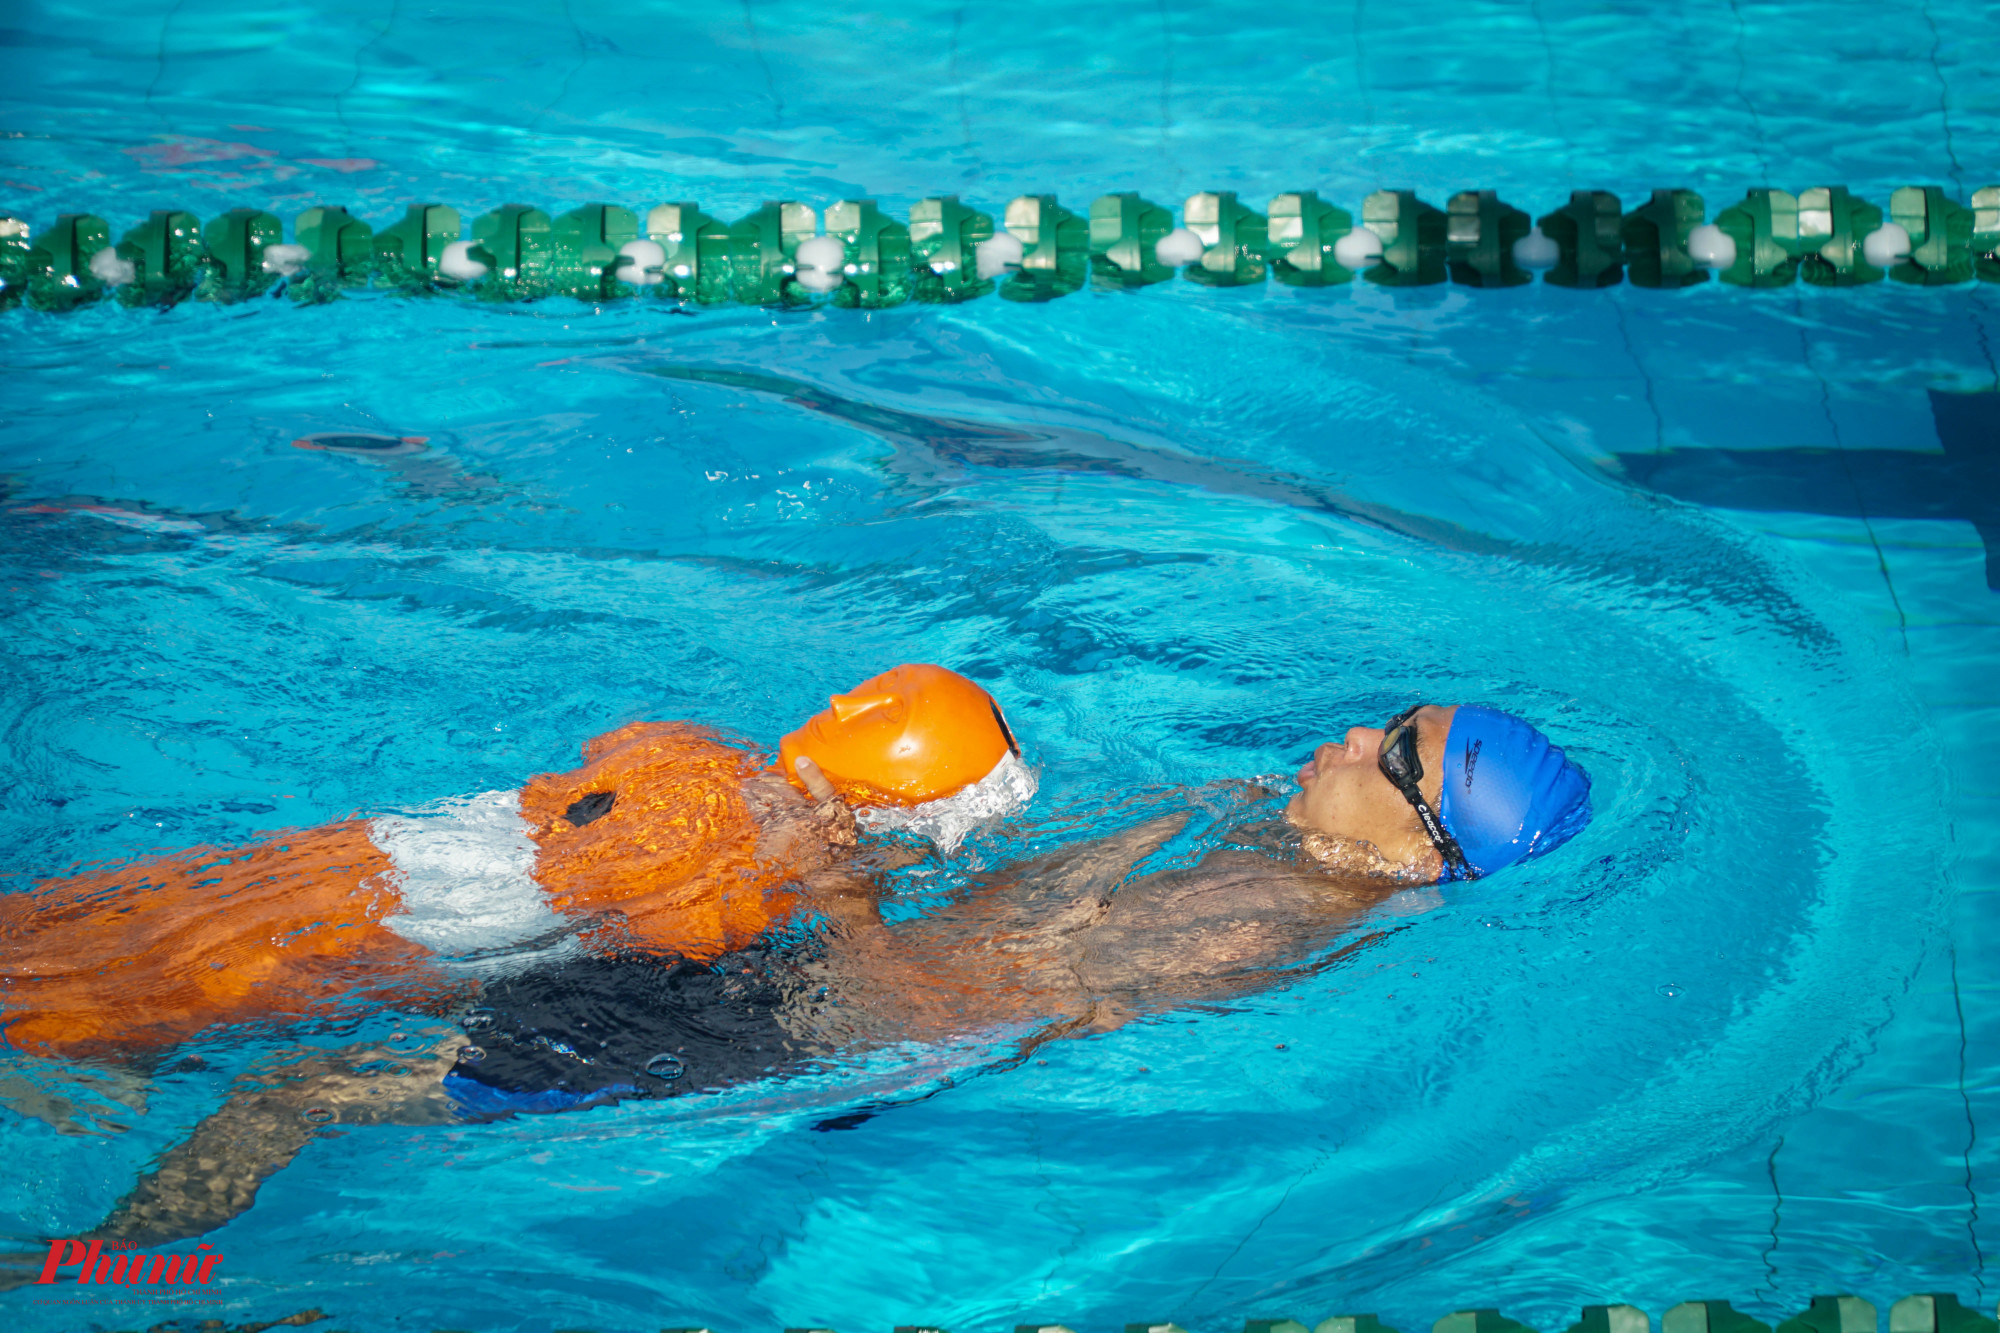 Trước đó, sáng 02-6-2022, 28 Đội dự thi đã tranh tài 02 phần thi: CNCH trong môi trường nước và Bơi CNCH tại Câu lạc bộ bơi lội Lam Sơn (Phường 4, Quận 5). Trong phần thi Bơi CNCH, các đội thi phải bơi qua quãng đường dài 100 mét đưa 02 hình nộm (khoảng 31kg và 40kg) đúng kỹ thuật về đích. 